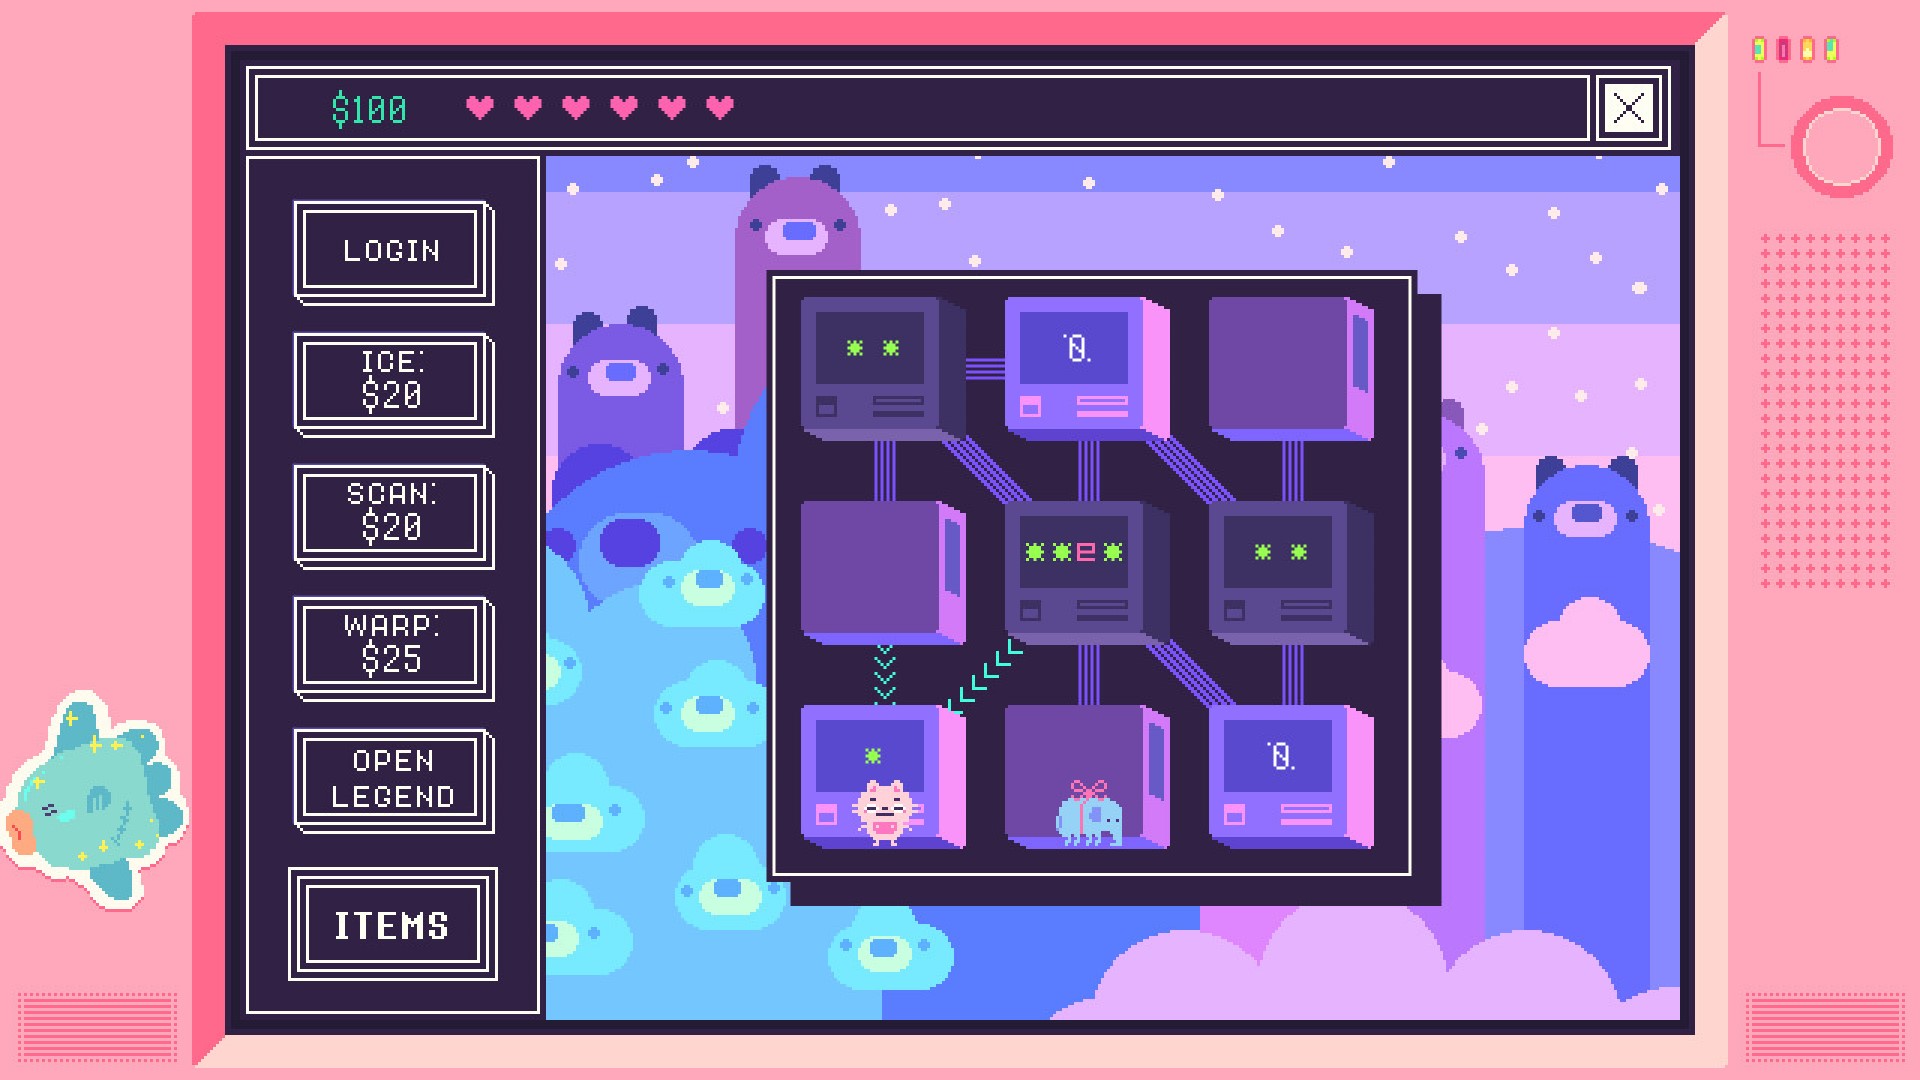 Τα καλύτερα παιχνίδια παζλ κινητής τηλεφωνίας: Beglitched. Η εικόνα δείχνει τρία με τρία τετράγωνα τετράγωνα με pixelated χαρακτήρες μέσα, συμπεριλαμβανομένου ενός ελέφαντα και μιας γάτας